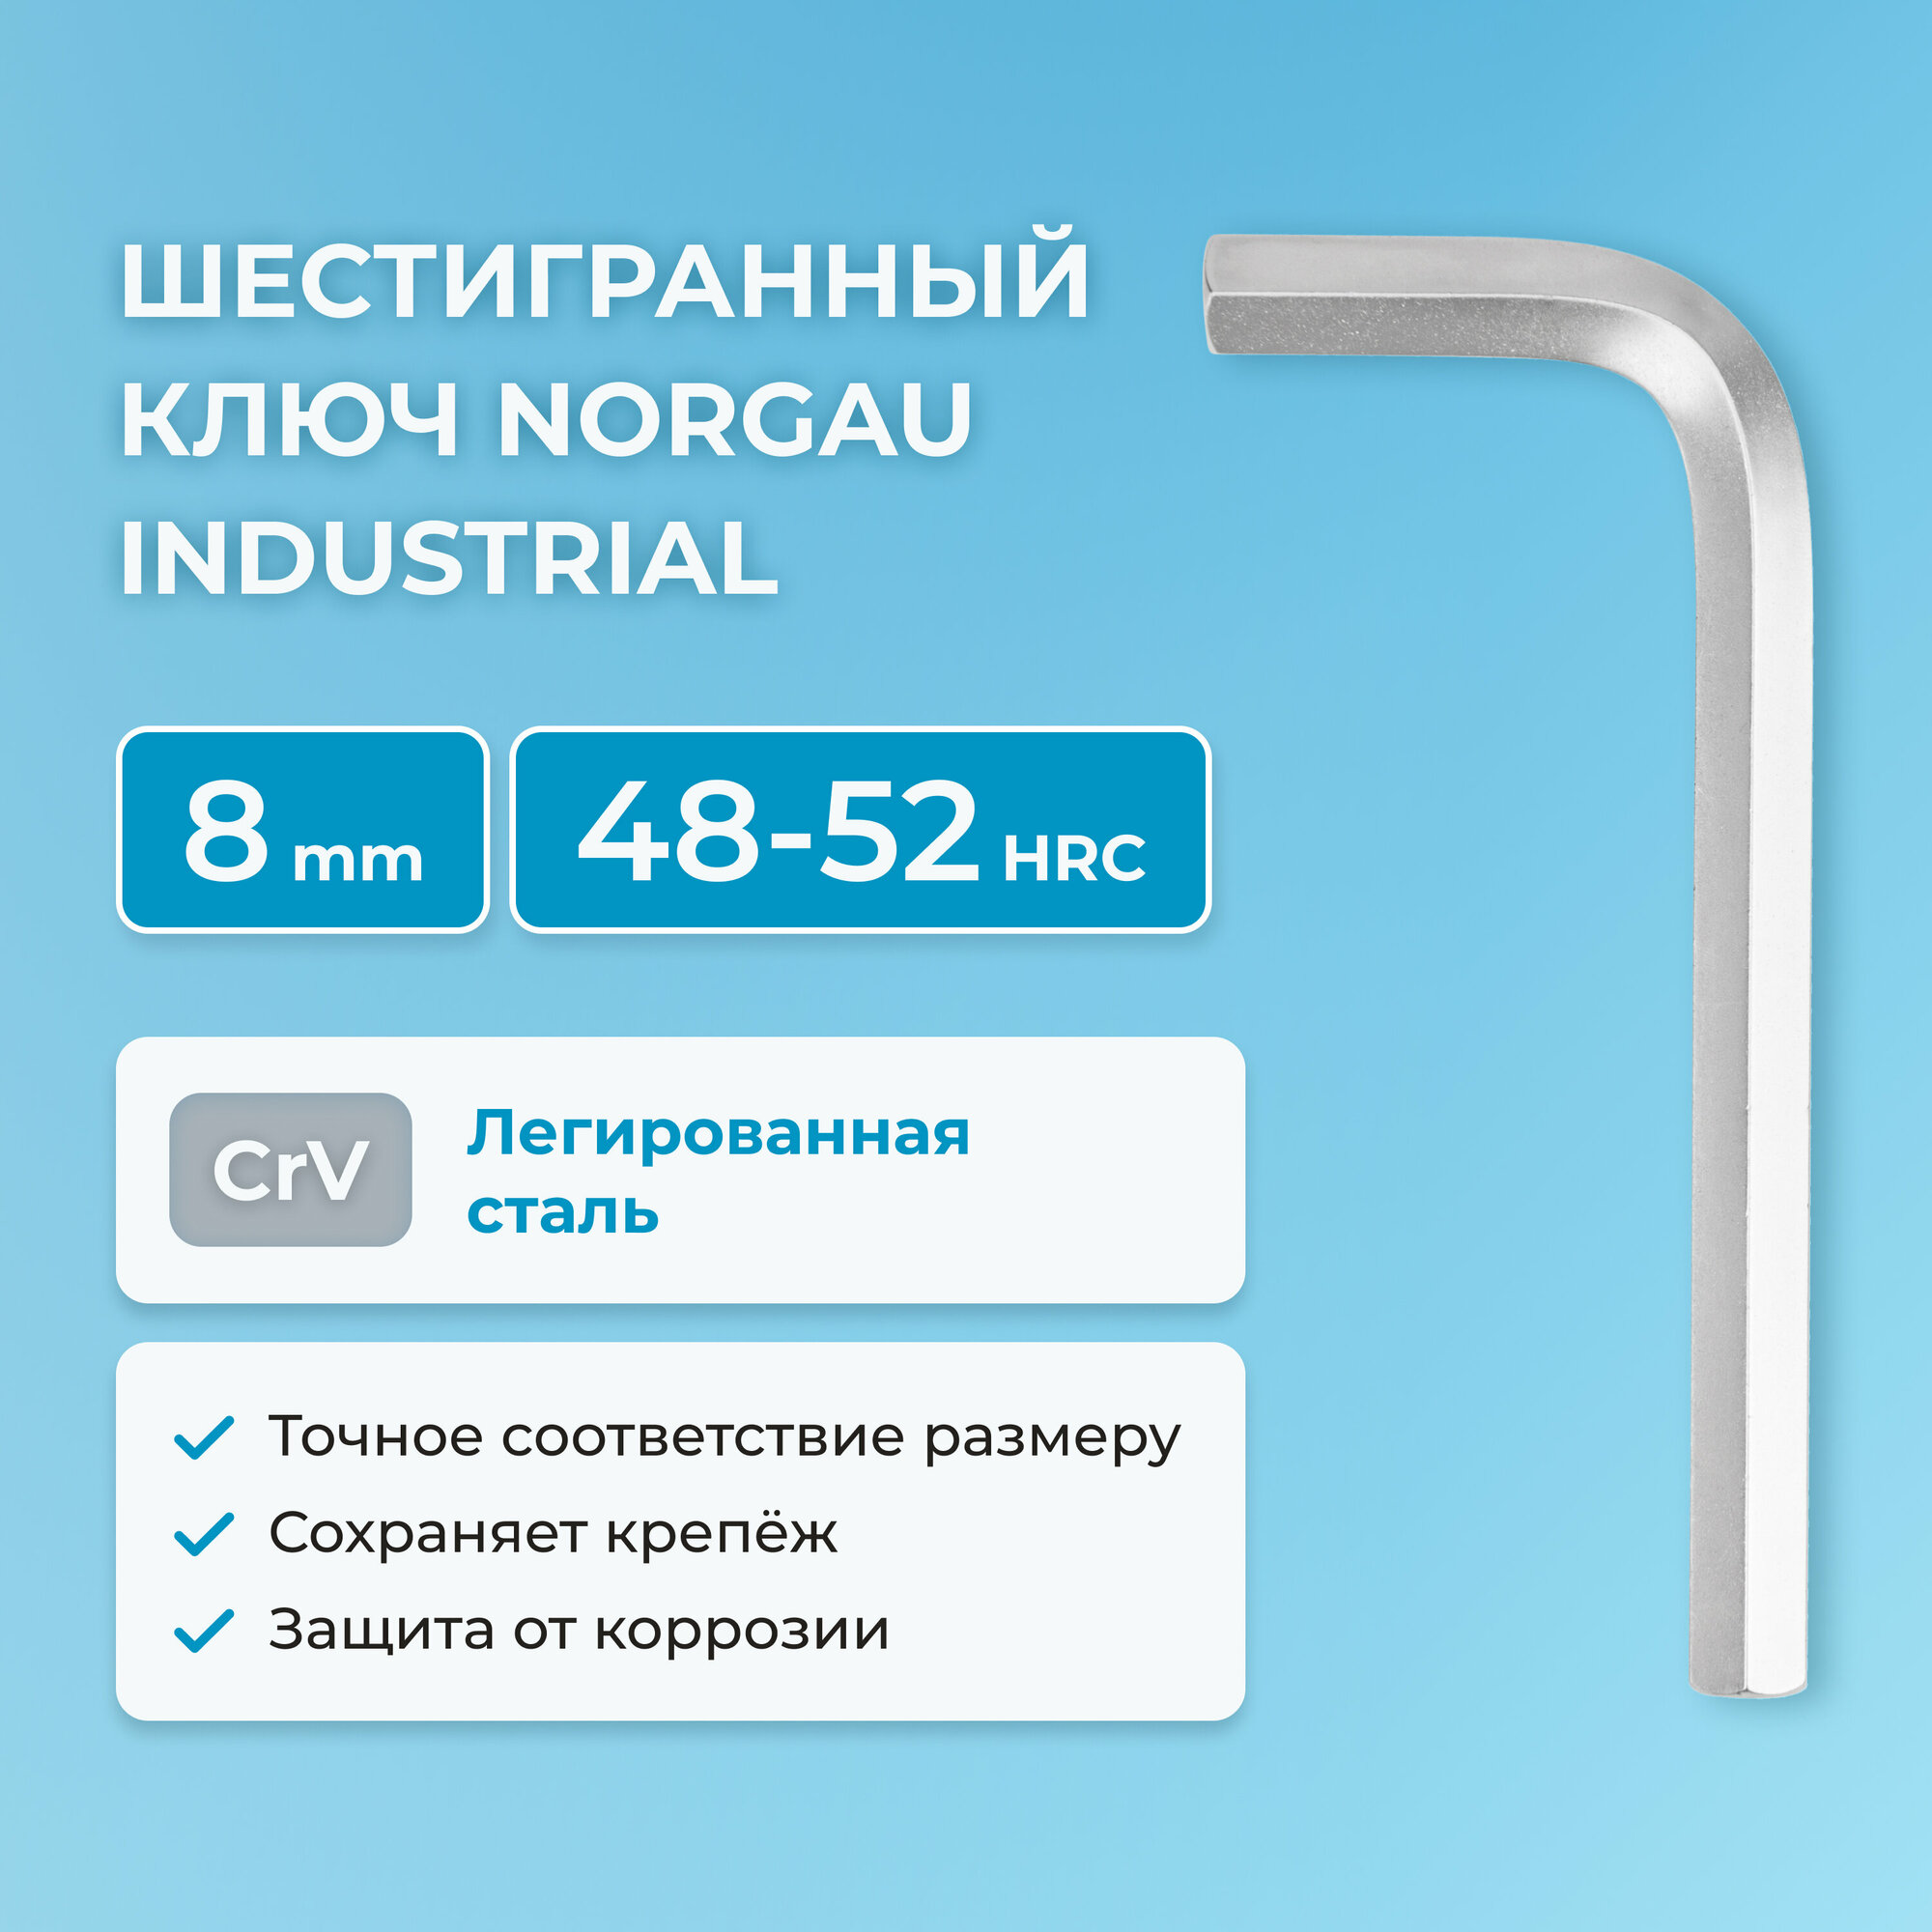 Шестигранный ключ NORGAU Industrial наружный шестигранник с хромированием, 48-52 HRC, 8 мм